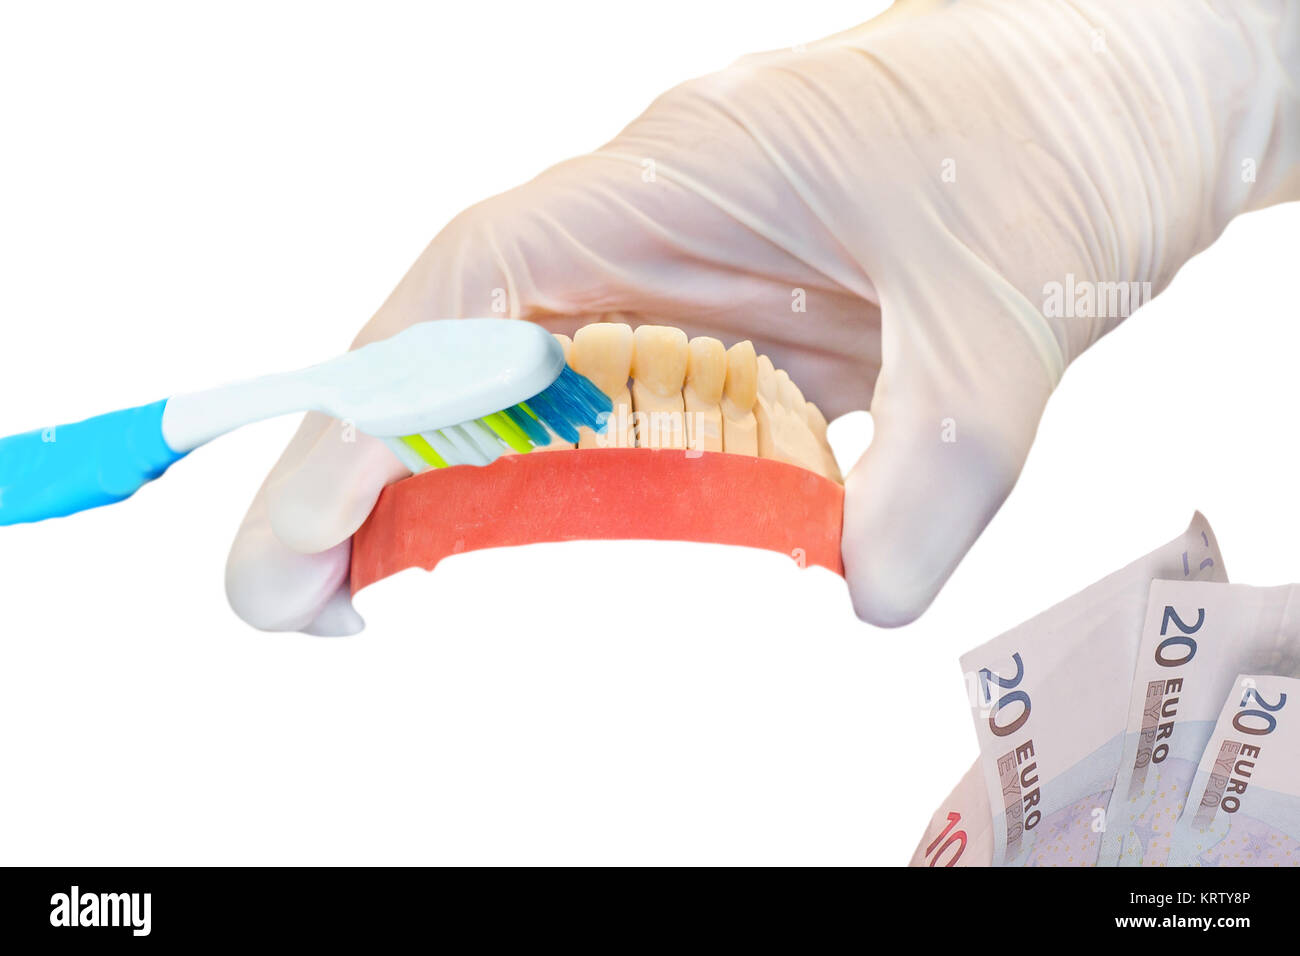 Zahnprothese, Zahnbürste und Euro Scheine, Fokus auf die künstlichen Zähne. Symbol für hohe Zahnersatzkosten. Stock Photo